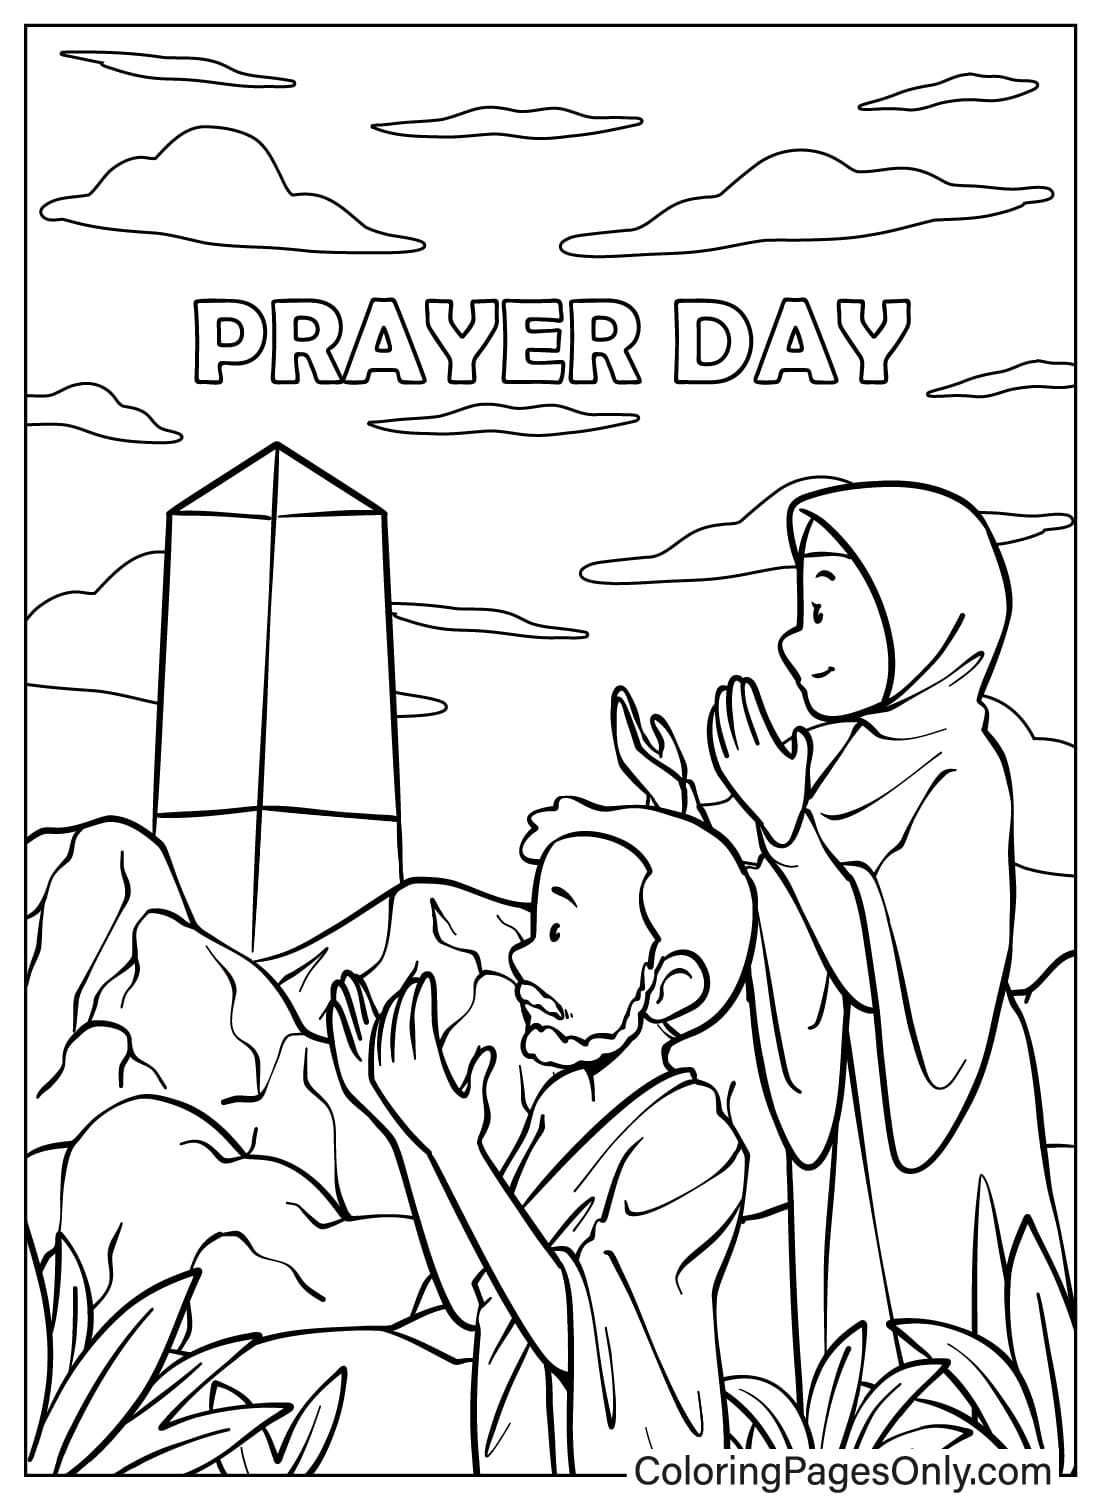 Uomo e donna che pregano dal giorno della preghiera